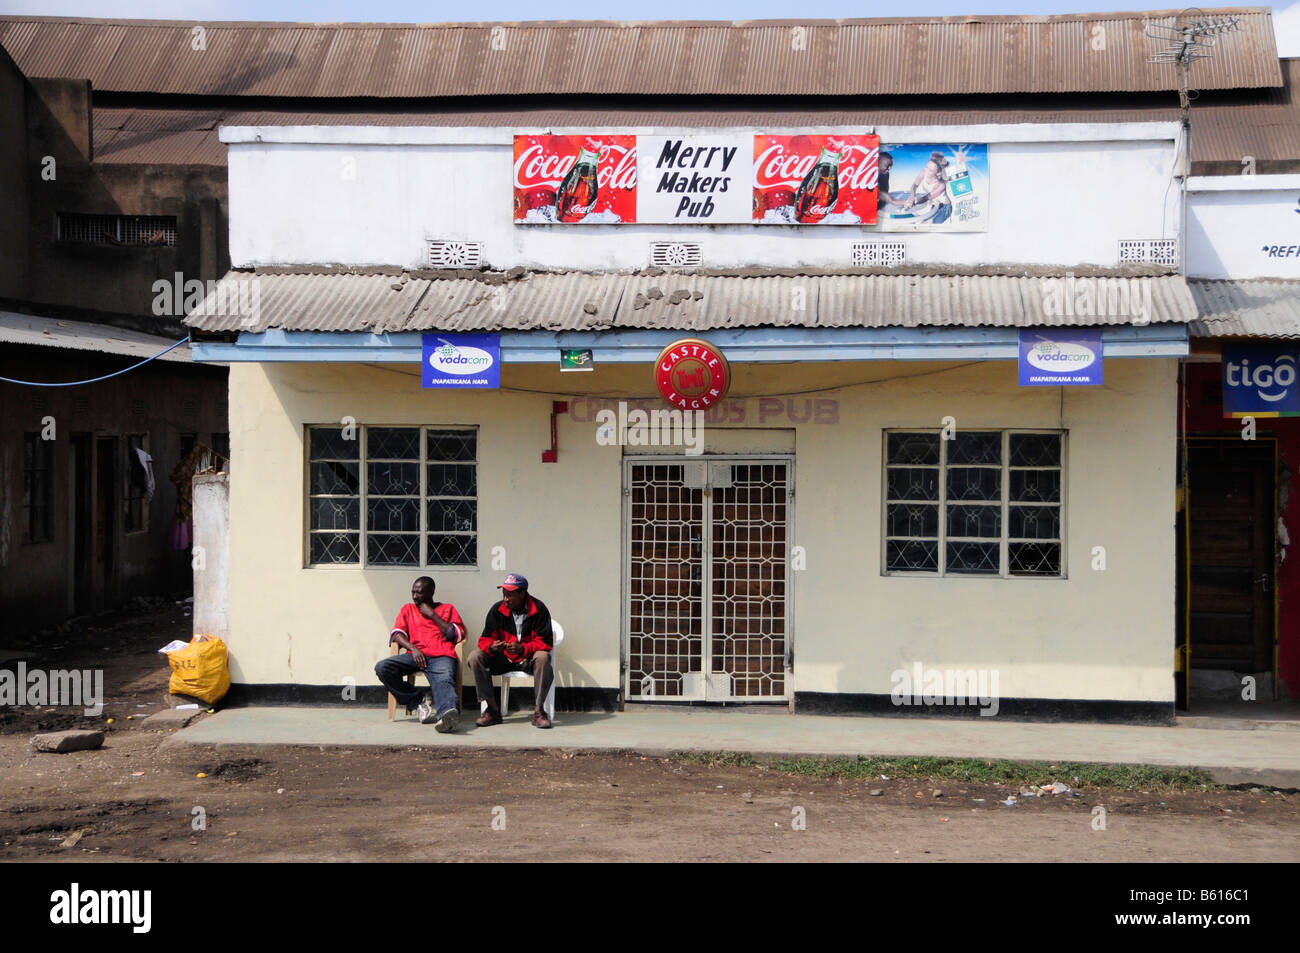 Dos locales en la parte delantera de un pub, Pub Carnavalescos, Arusha, Tanzania, África Foto de stock